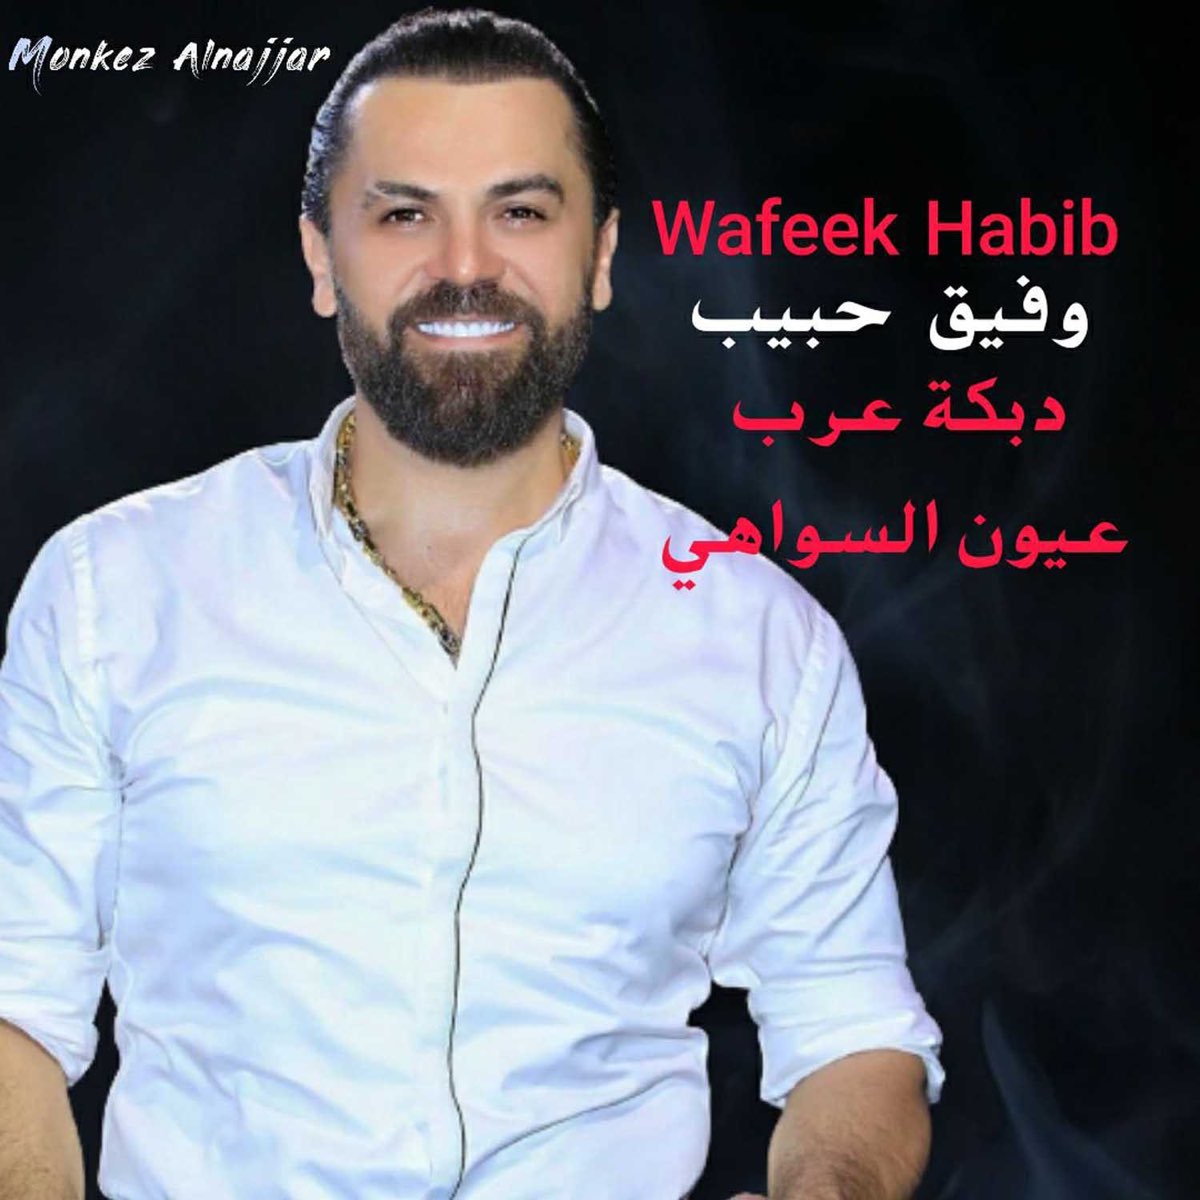 دبكة عرب عيون السواهي - EP - Album by Wafeek Habib - Apple Music